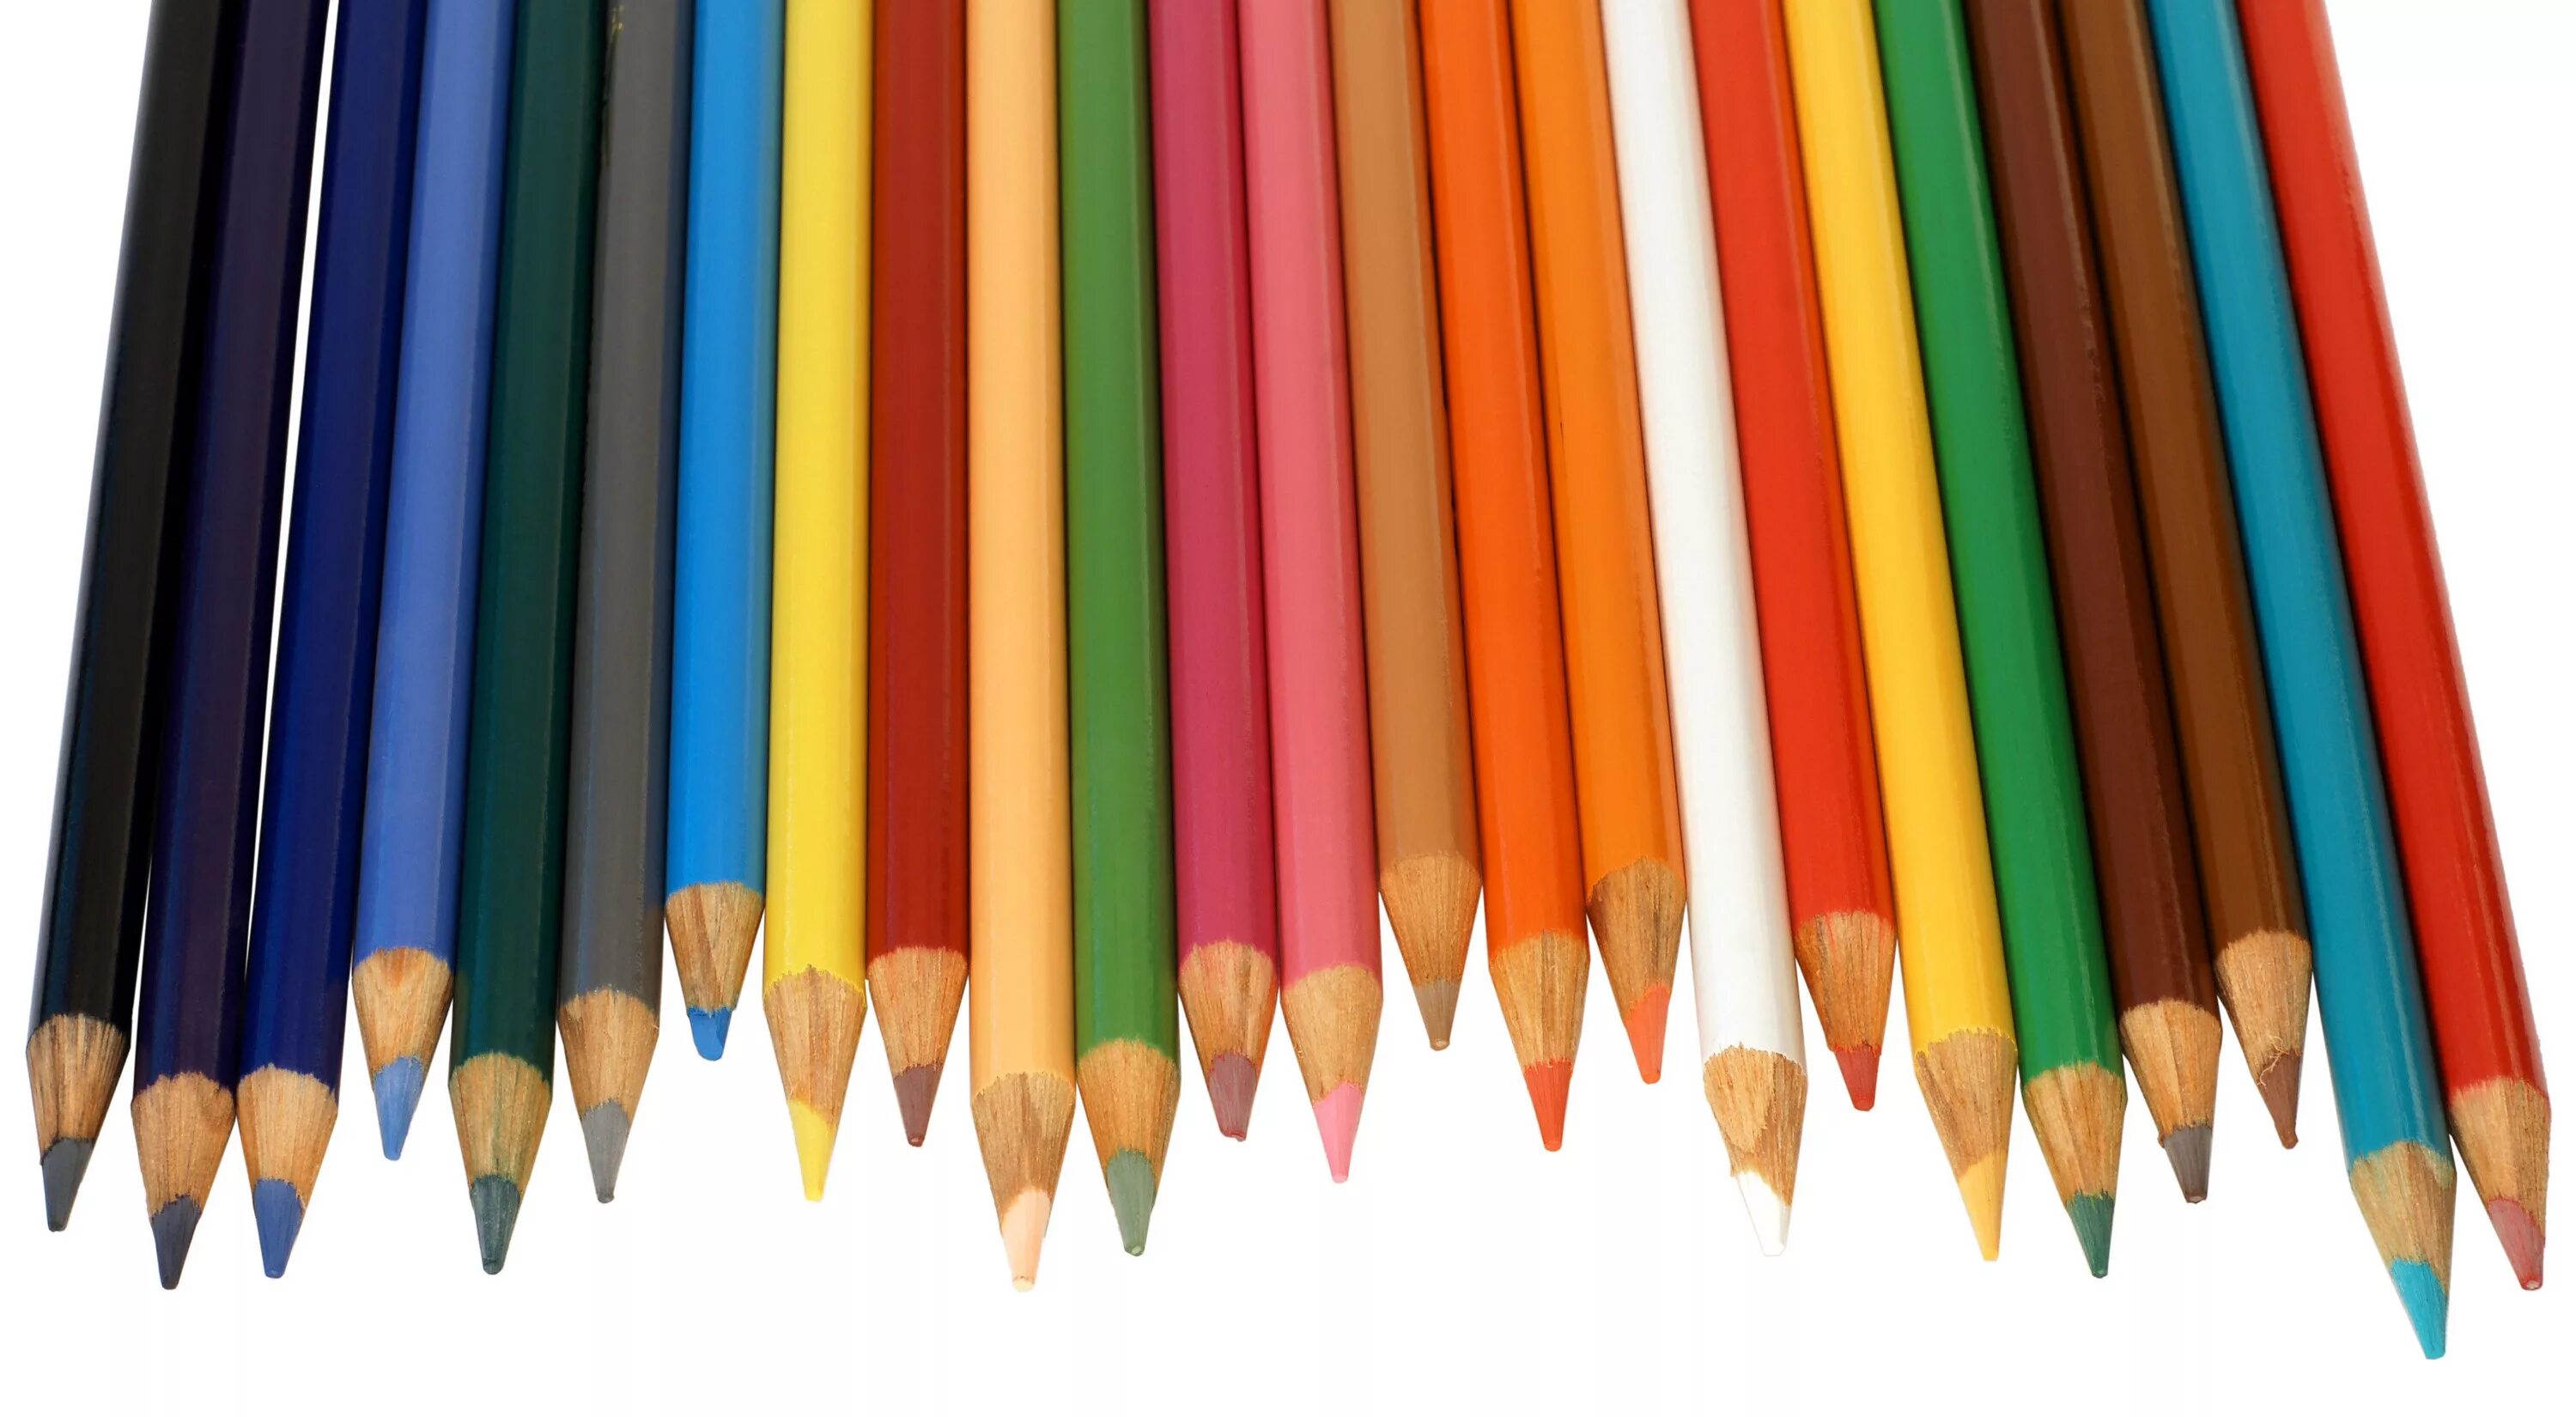 Картинка карандаш для детей. Карандаши цветные. Рисование карандашом. Карандаш для детей. Цветные карандаши для детей.